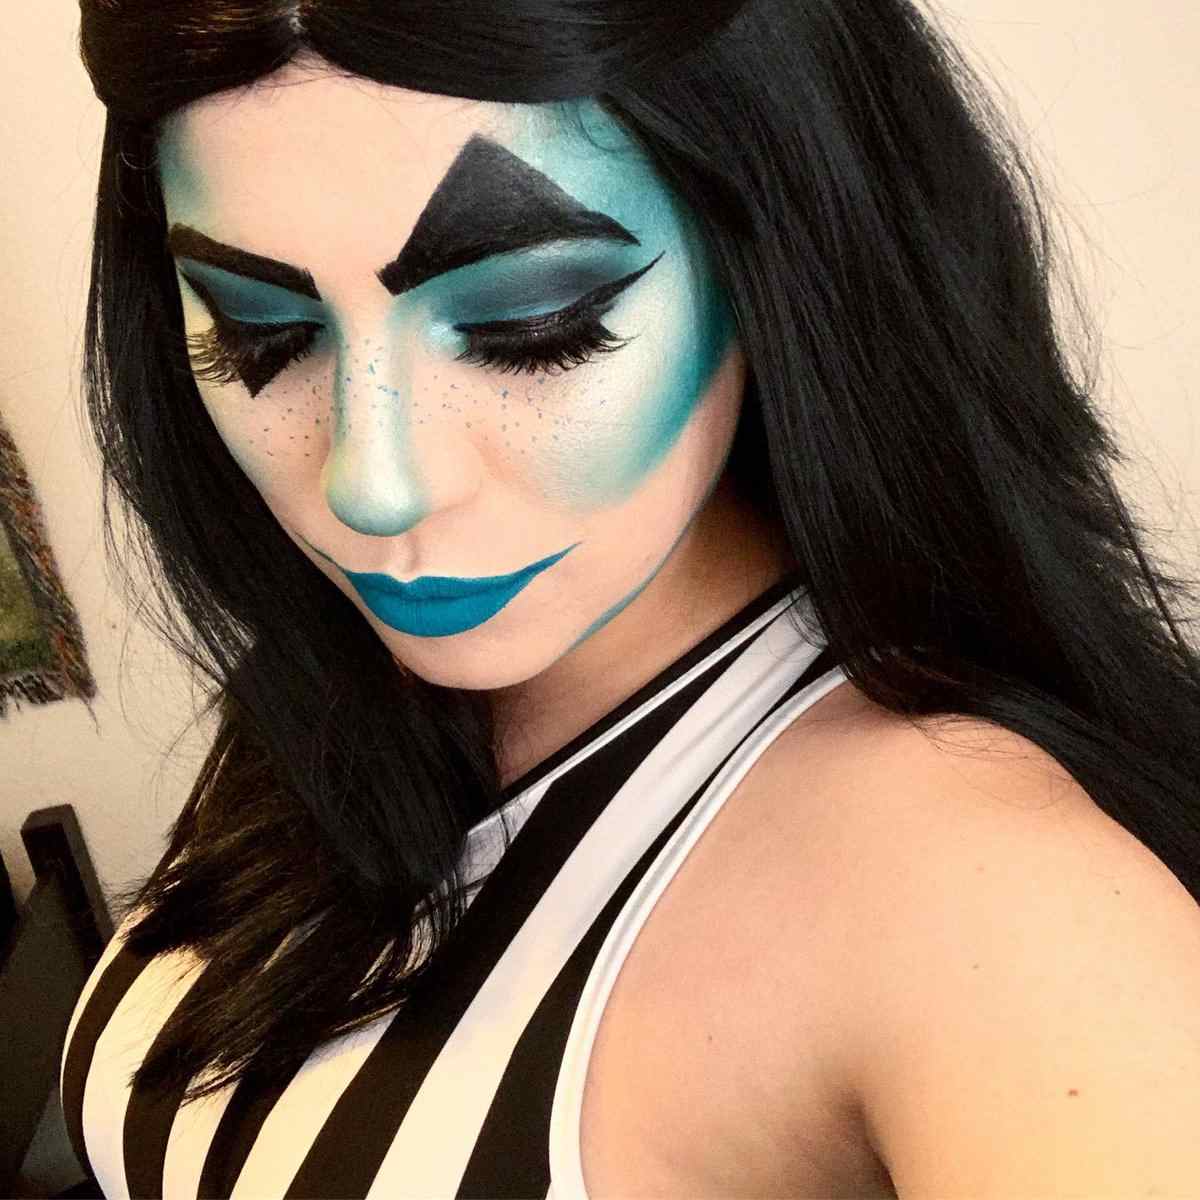 moderner Clown schminken Frau einfach Augen Makeup Ideen gruselig